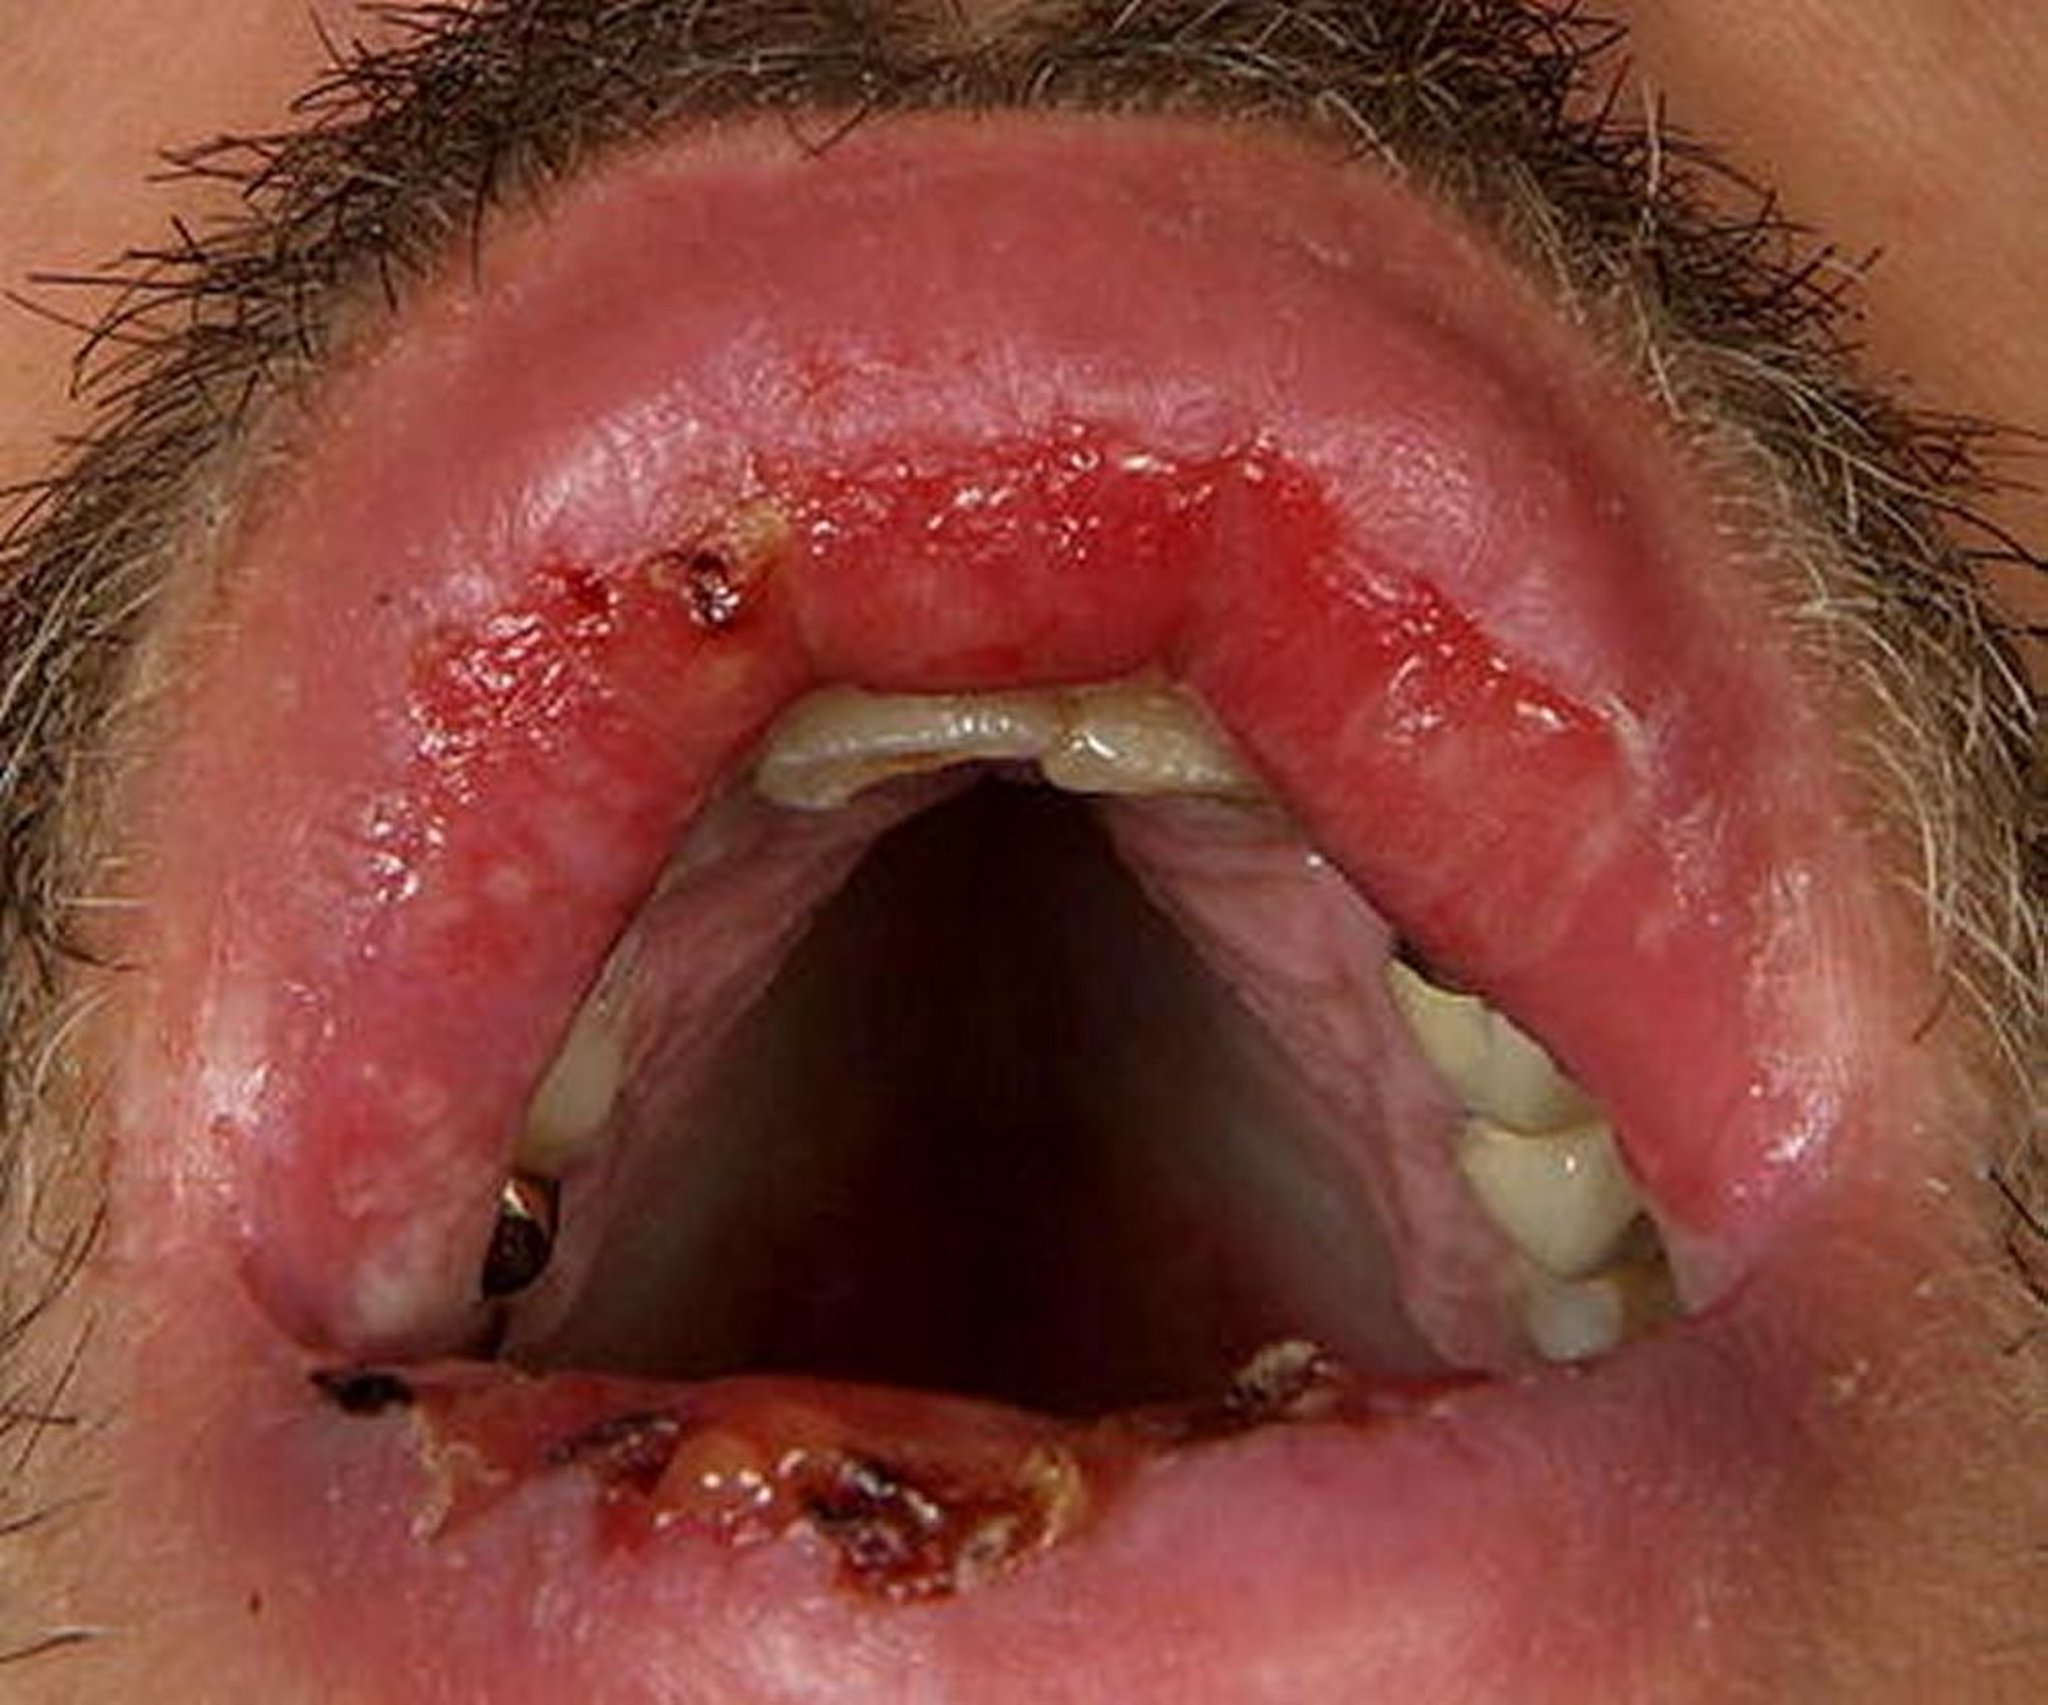 Pénfigo vulgar (mucosa oral)